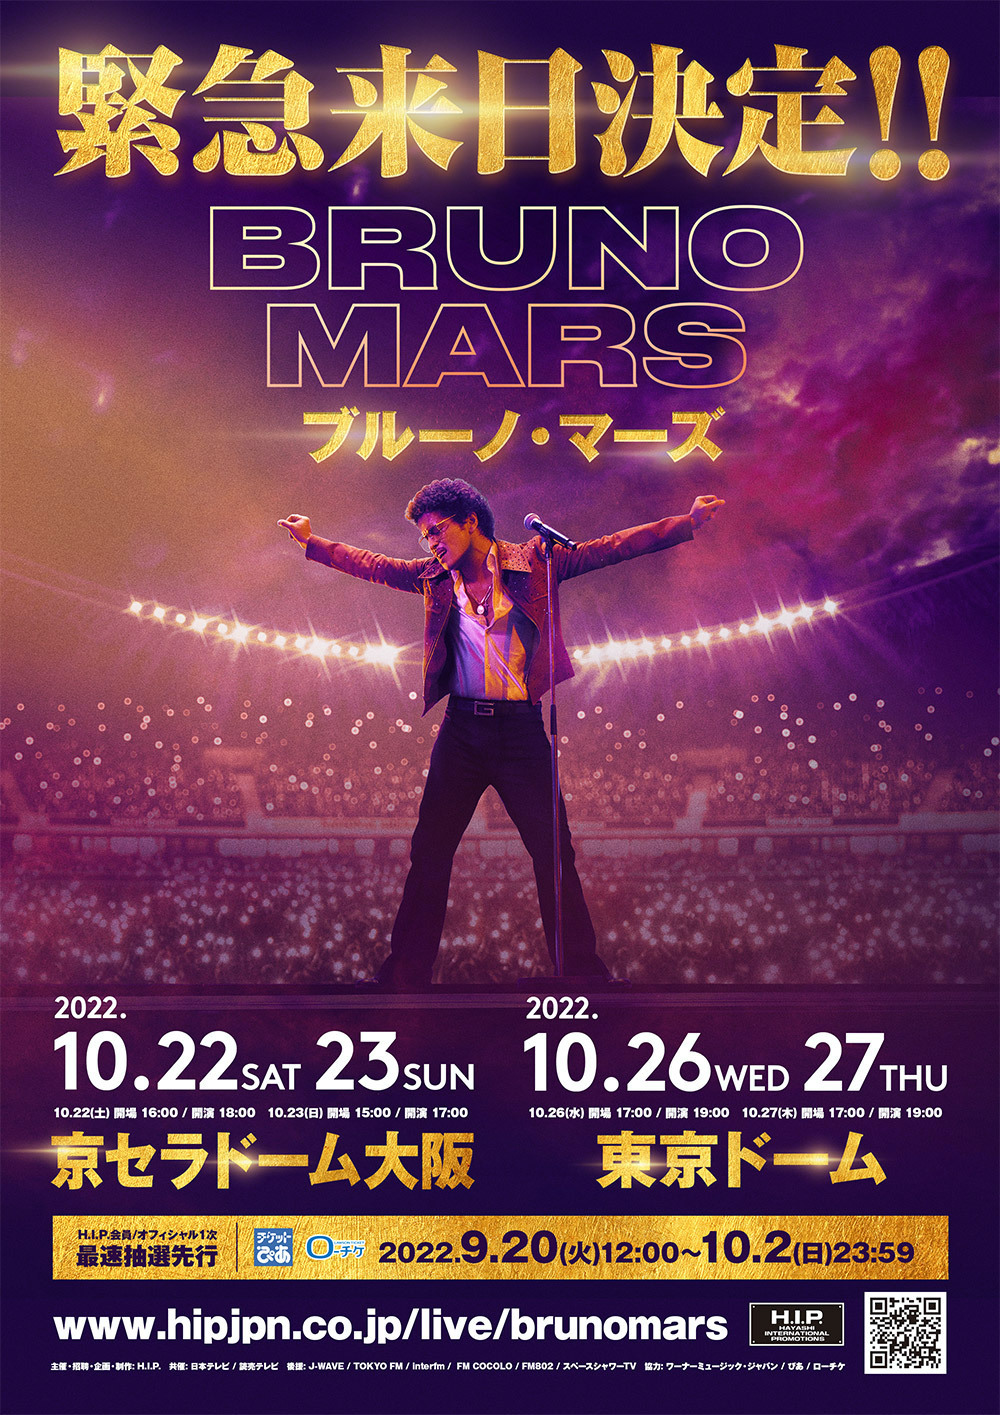 『Bruno Mars Japan Tour 2022』 